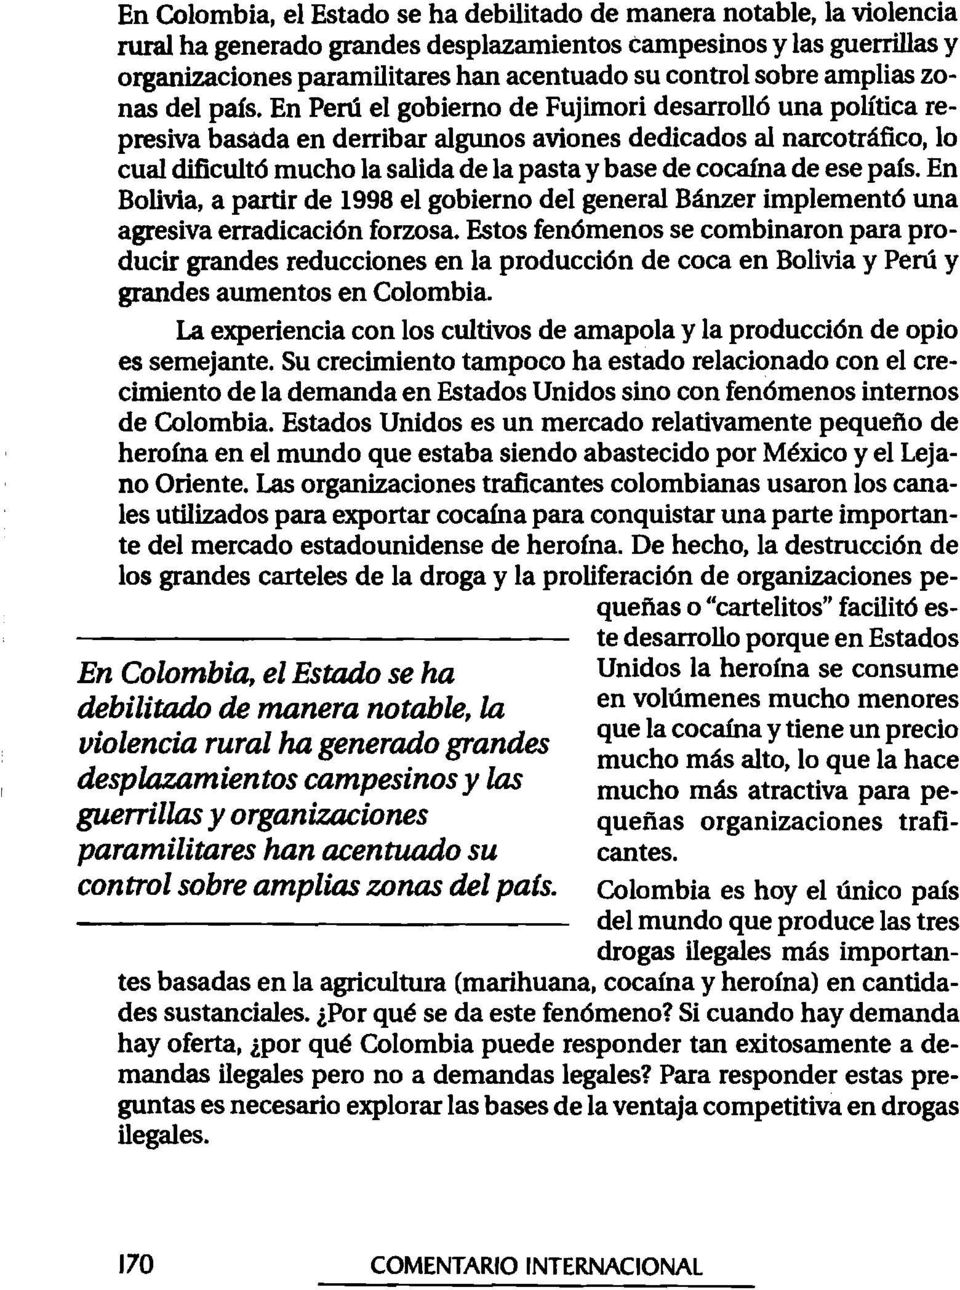 En Perú el gobierno de Fujimori desarrolló una política represiva basada en derribar algunos aviones dedicados al narcotráfico, 10 cual dificultó mucho la salida de la pasta y base de cocaína de ese